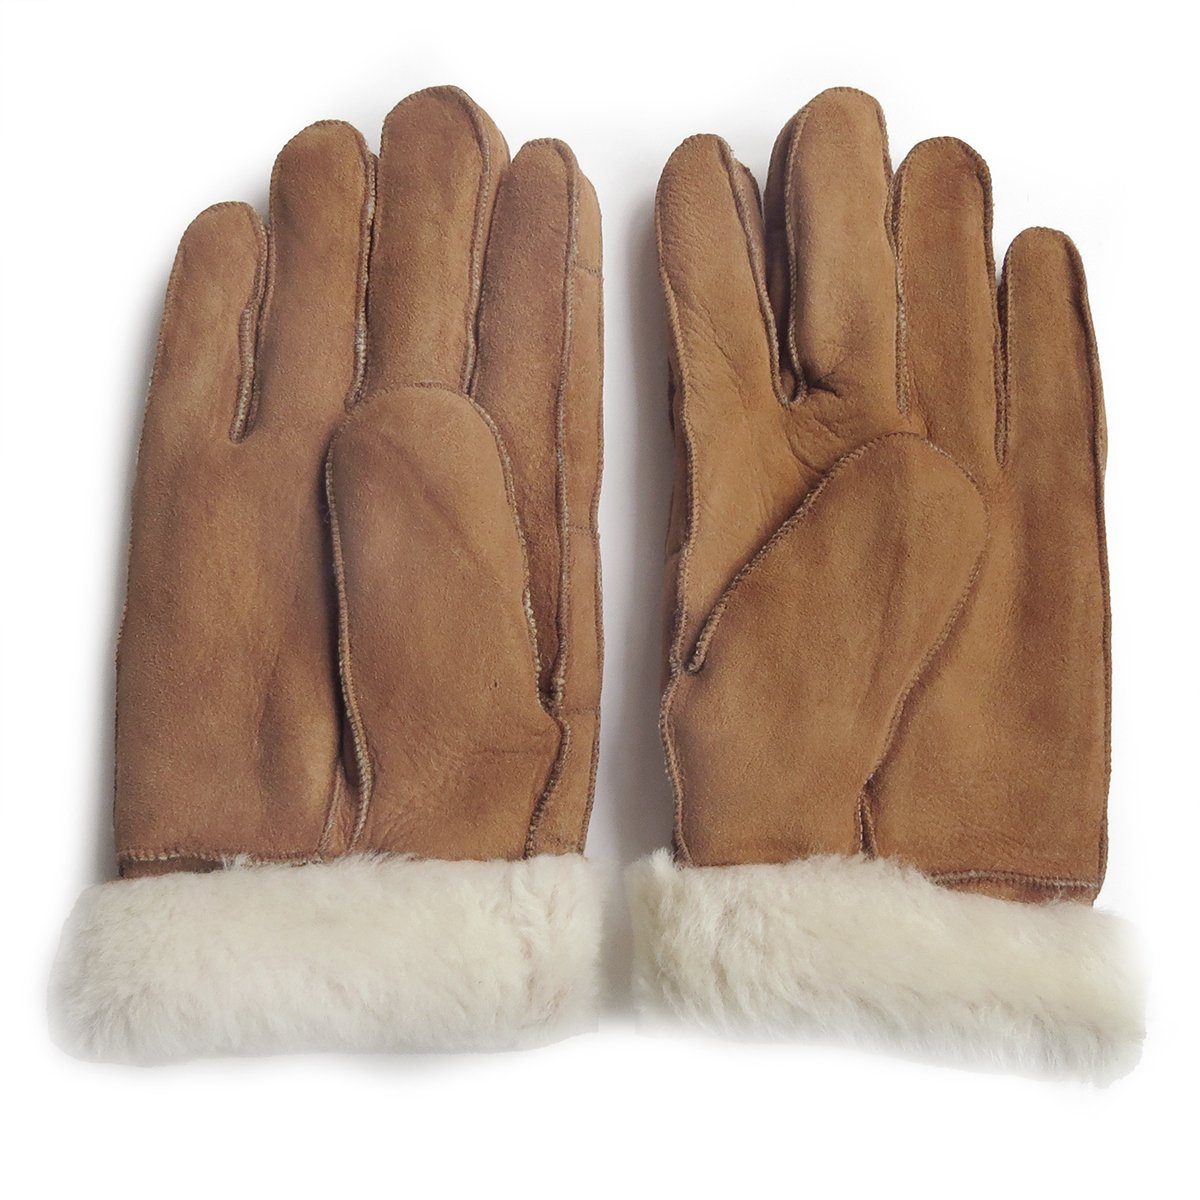 Fells unisex Sonia abweichen, Schaffell Farben braun kann aus Struktur Handschuhe abweichen hochwertig Winter-Arbeitshandschuhe des warm Originelli Lammfell können